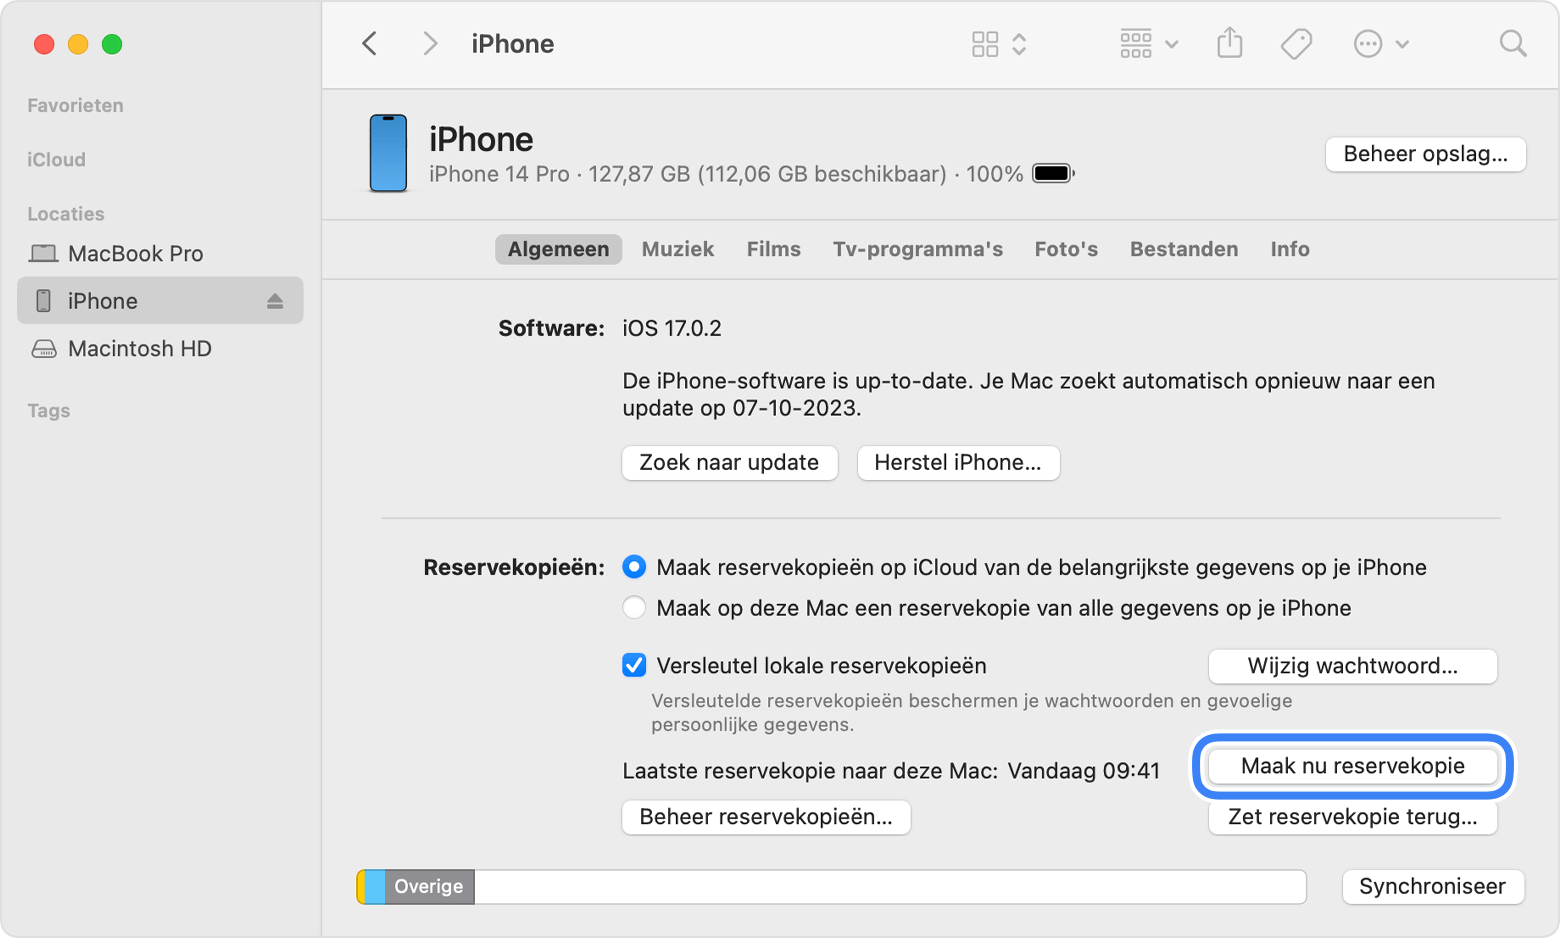 iPhone reservekopie maken op Mac